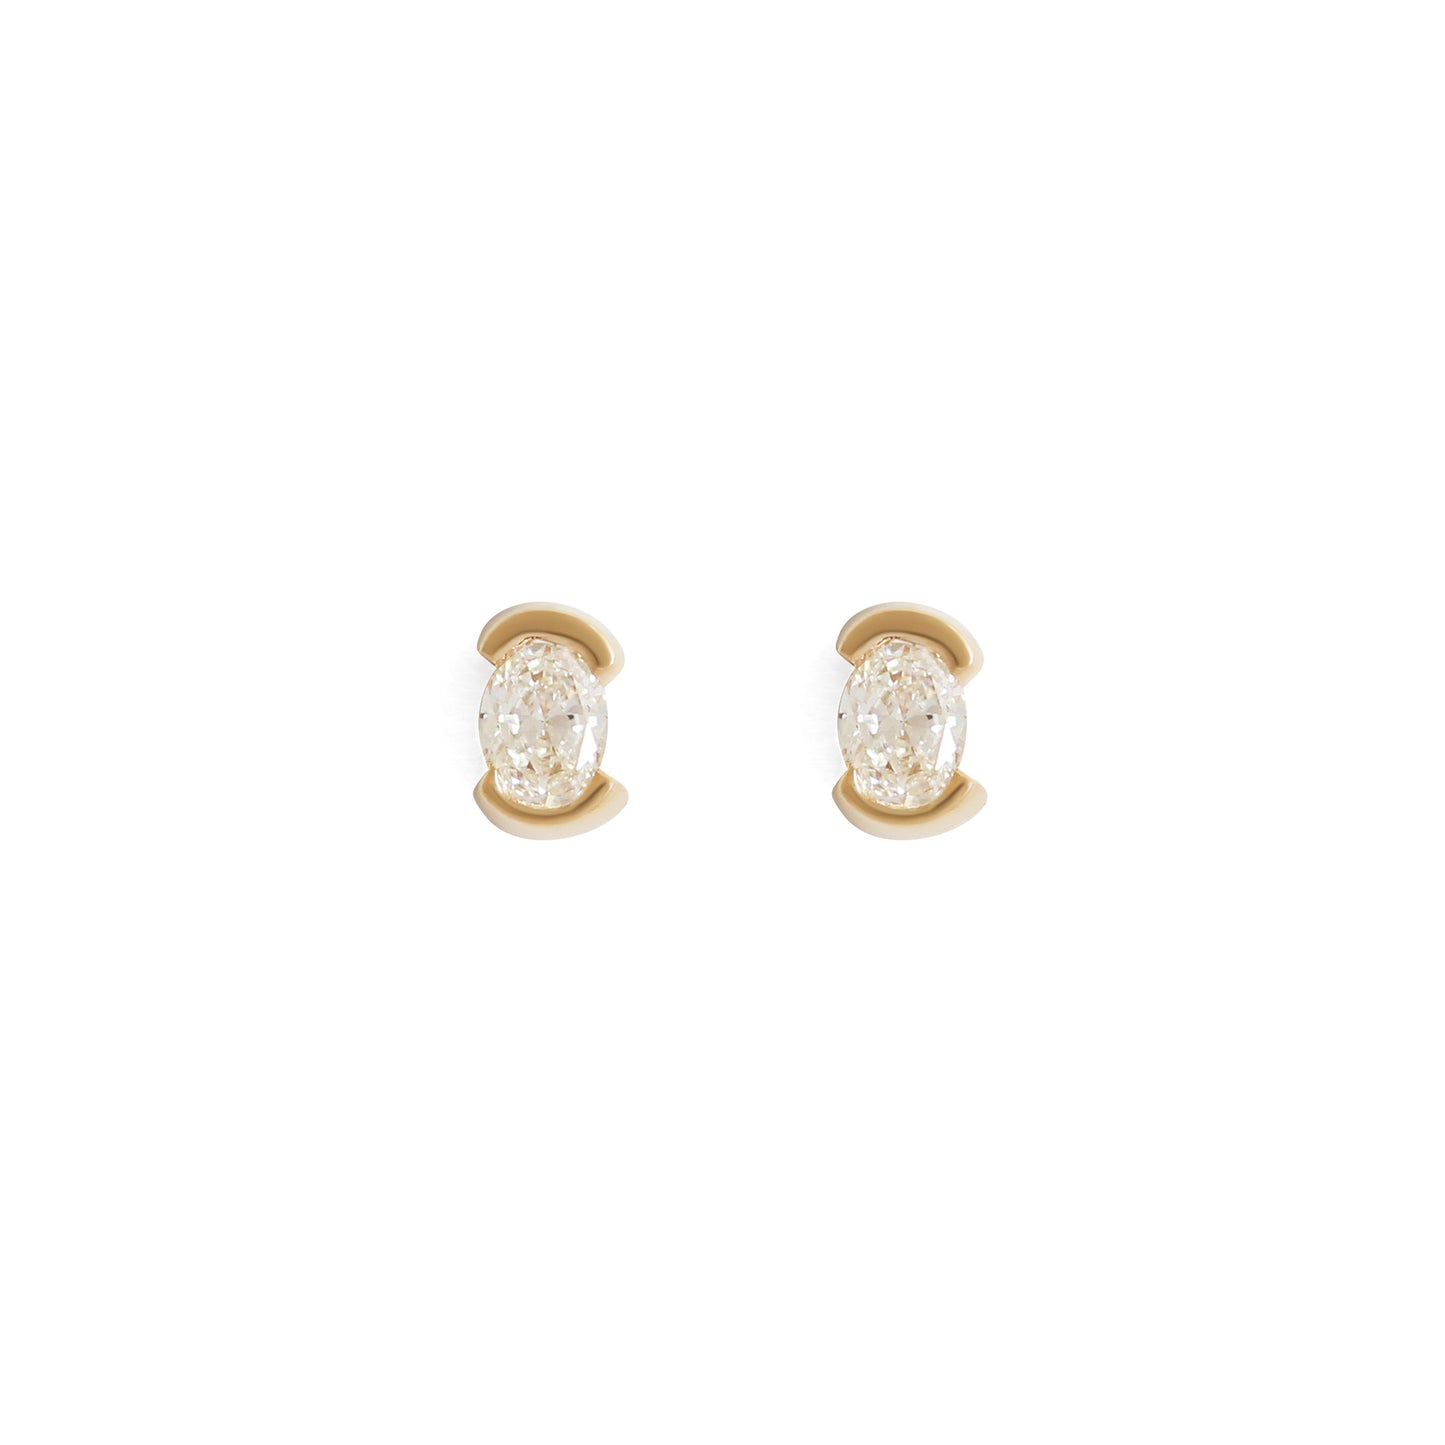 Split Bezel Earring / Lab Oval Diamond - Goldpoint Studio - Greenpoint, Brooklyn - Fine Jewelry